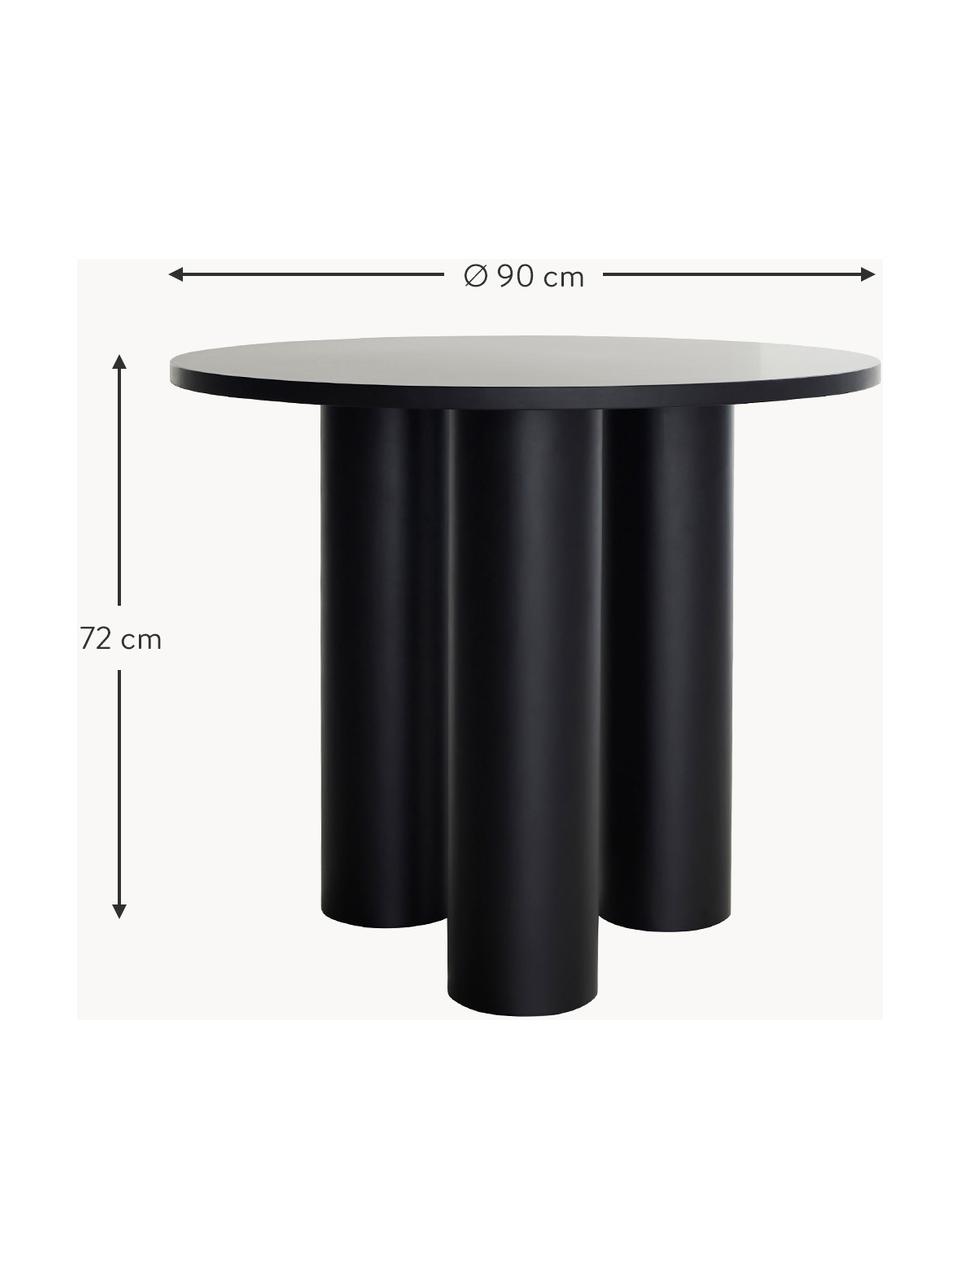 Kulatý stůl Colette, Ø 90 cm, Dřevovláknitá deska střední hustoty (MDF) s dýhou z ořechového dřeva, lakovaná

Tento produkt je vyroben z udržitelných zdrojů dřeva s certifikací FSC®., Černá, Ø 90 cm